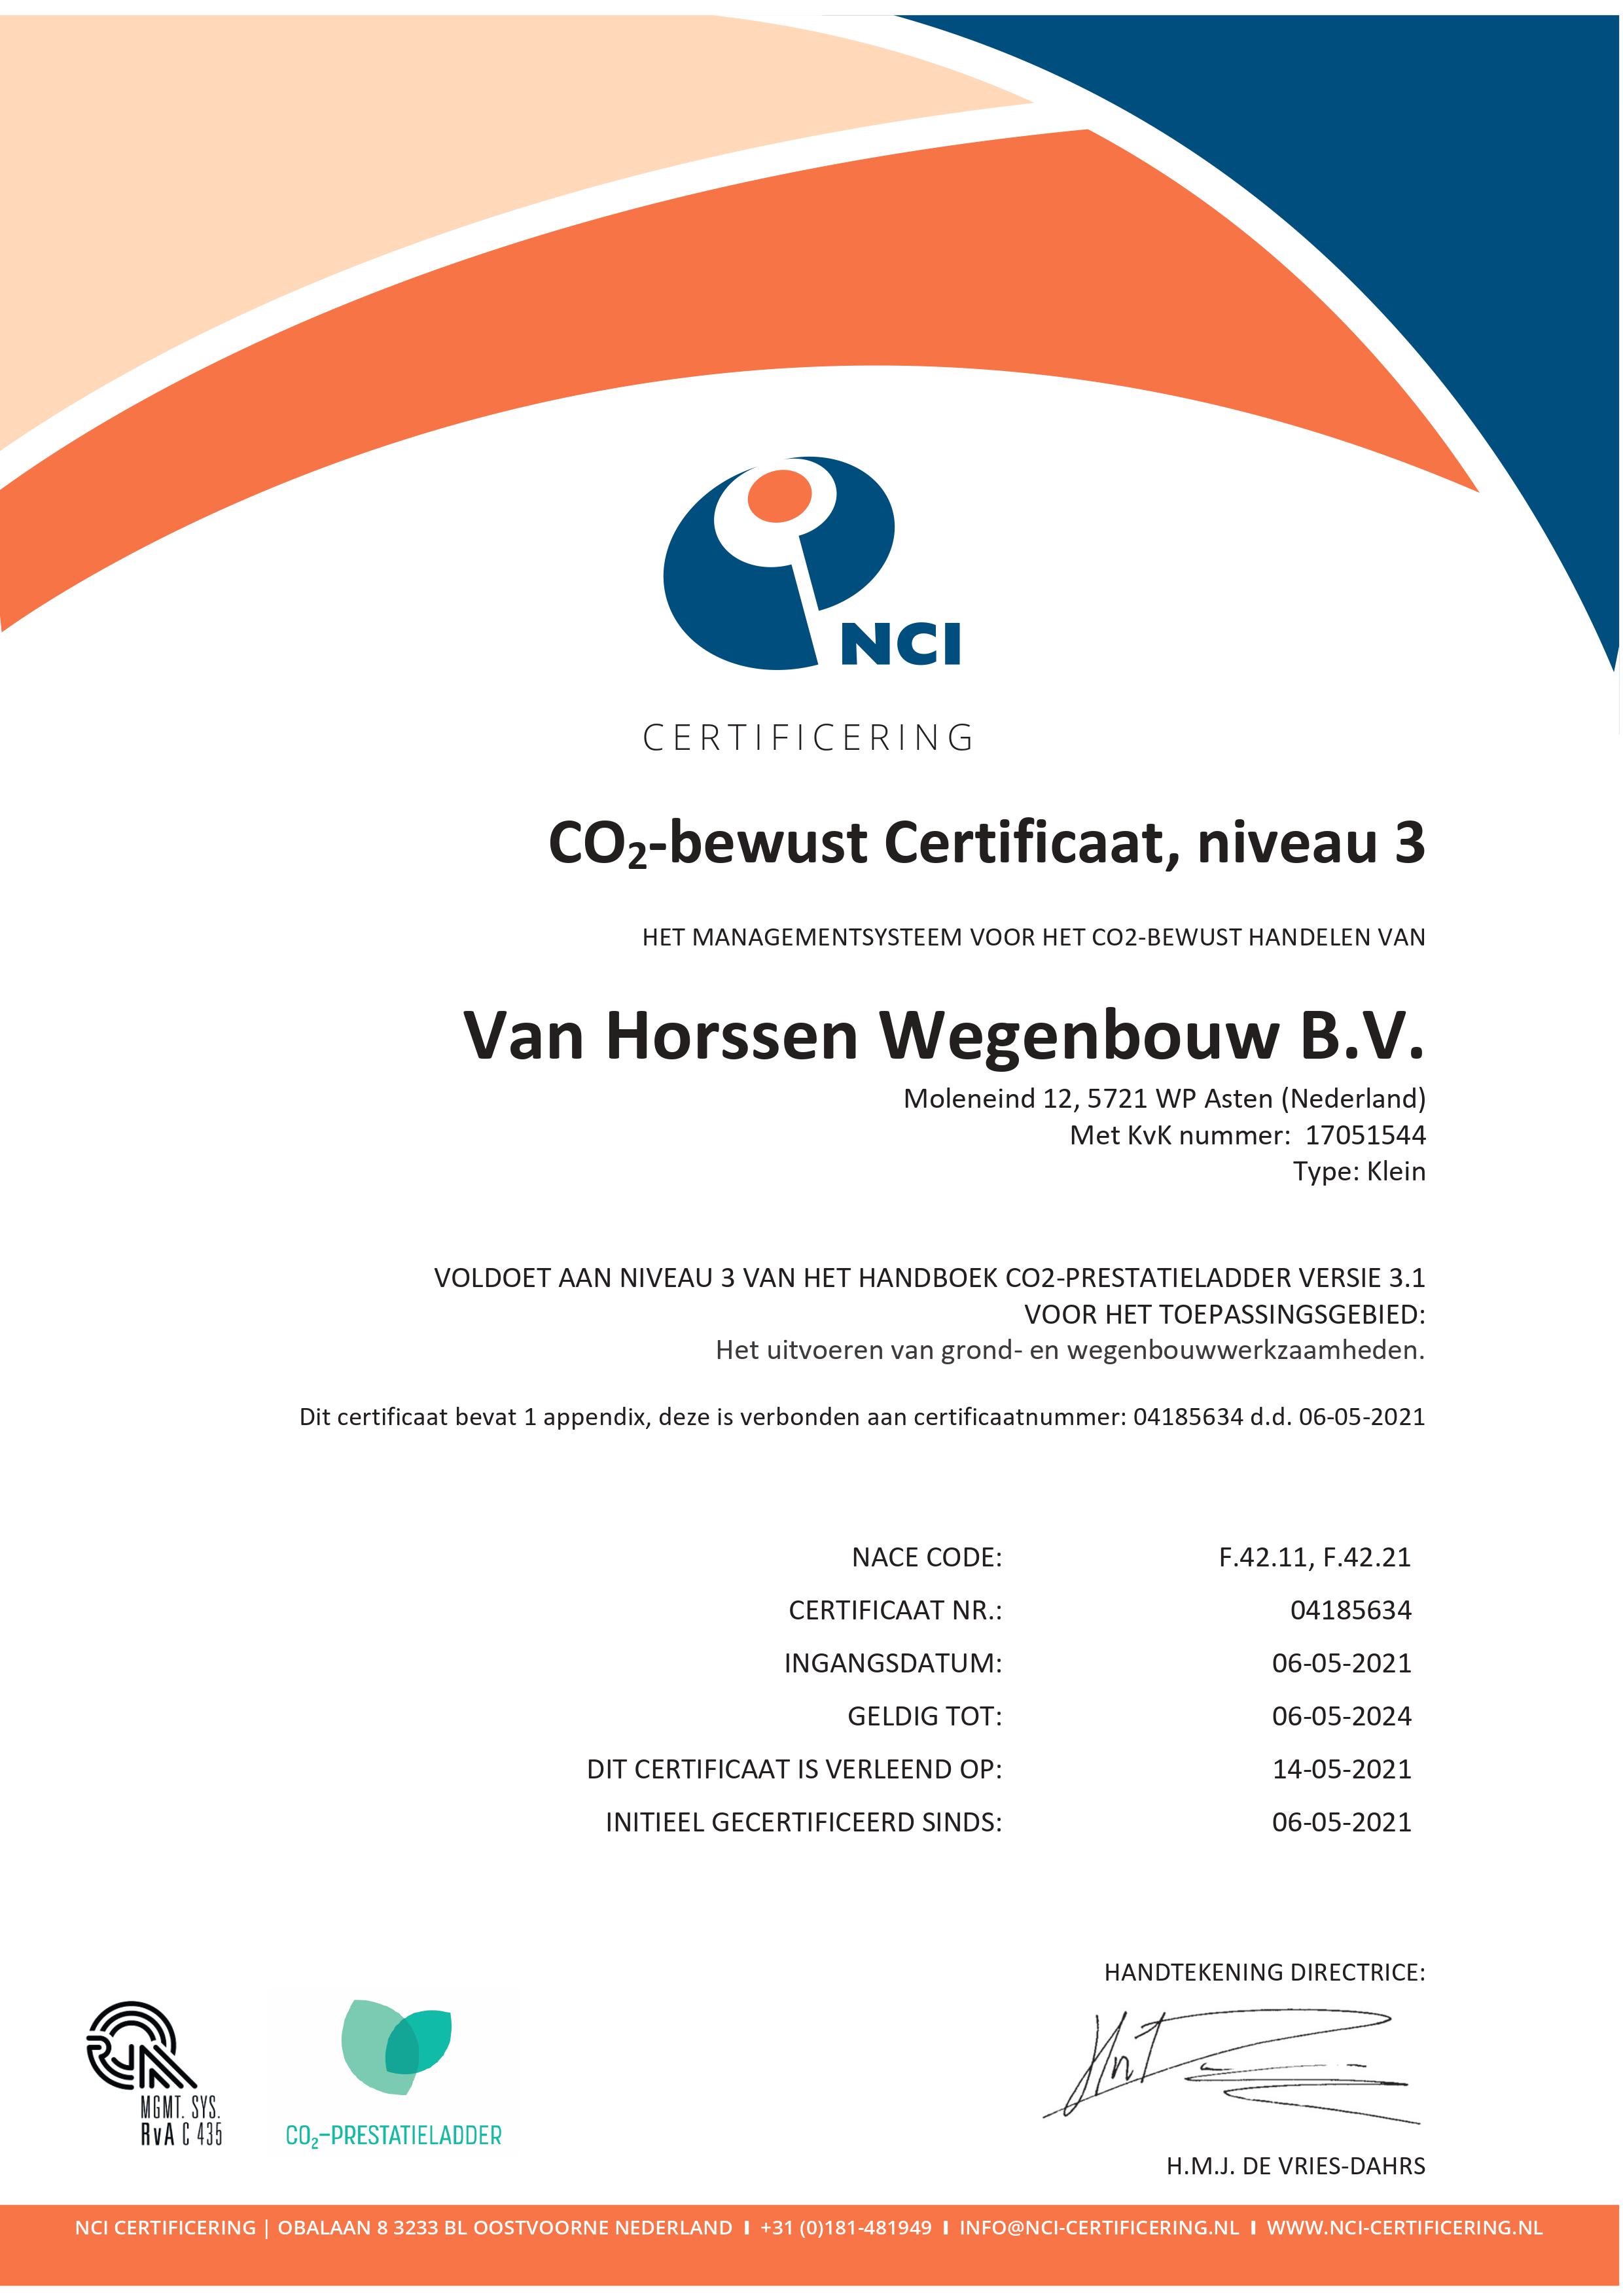 CO2 certificaat Van Horssen met app met RvA